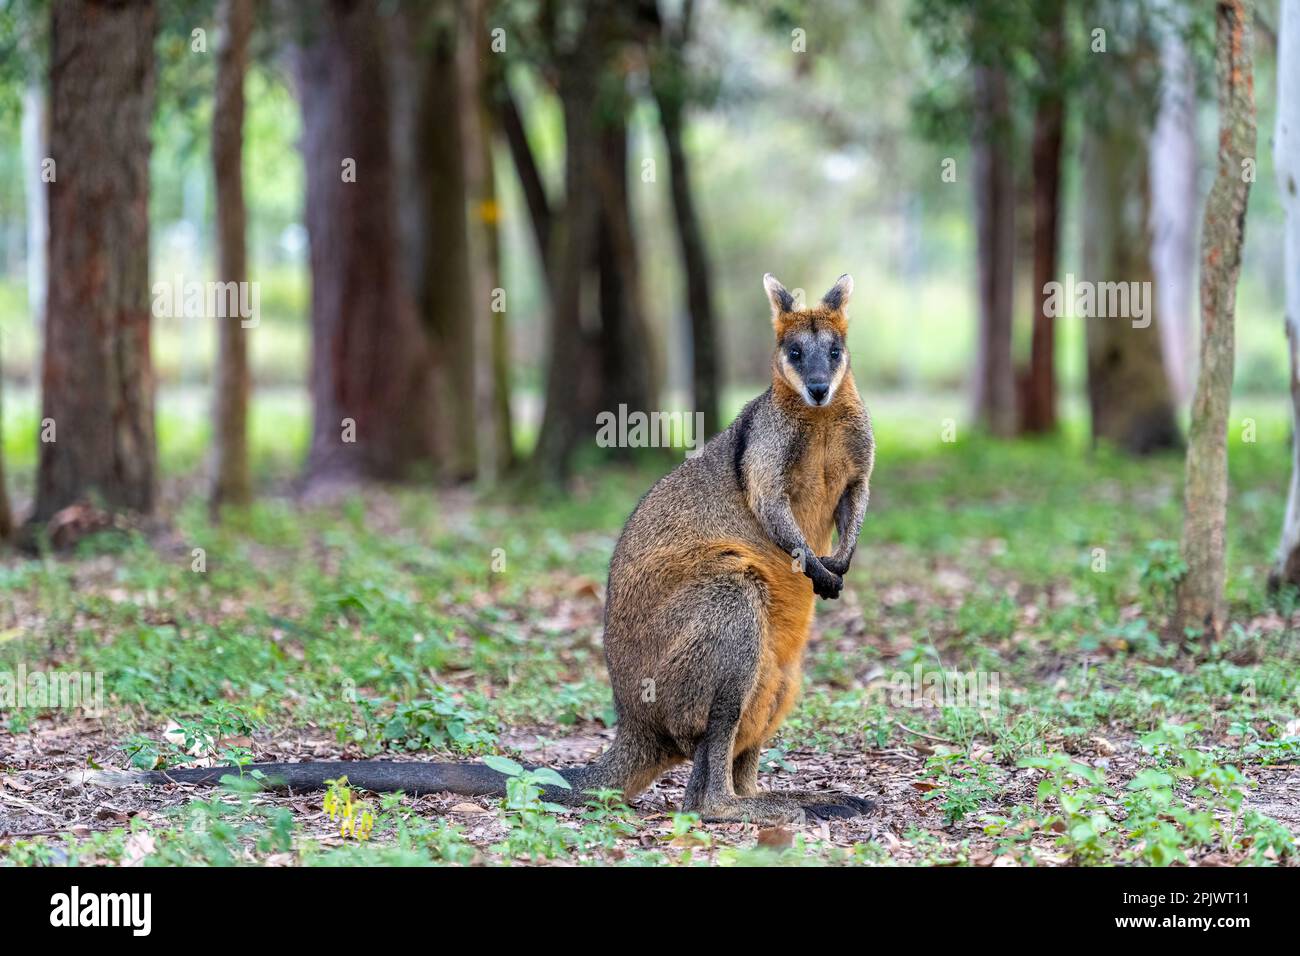 Swamp wallaby (Wallabia bicolor) standing in open woodlands. Queensland Australia. Stock Photo